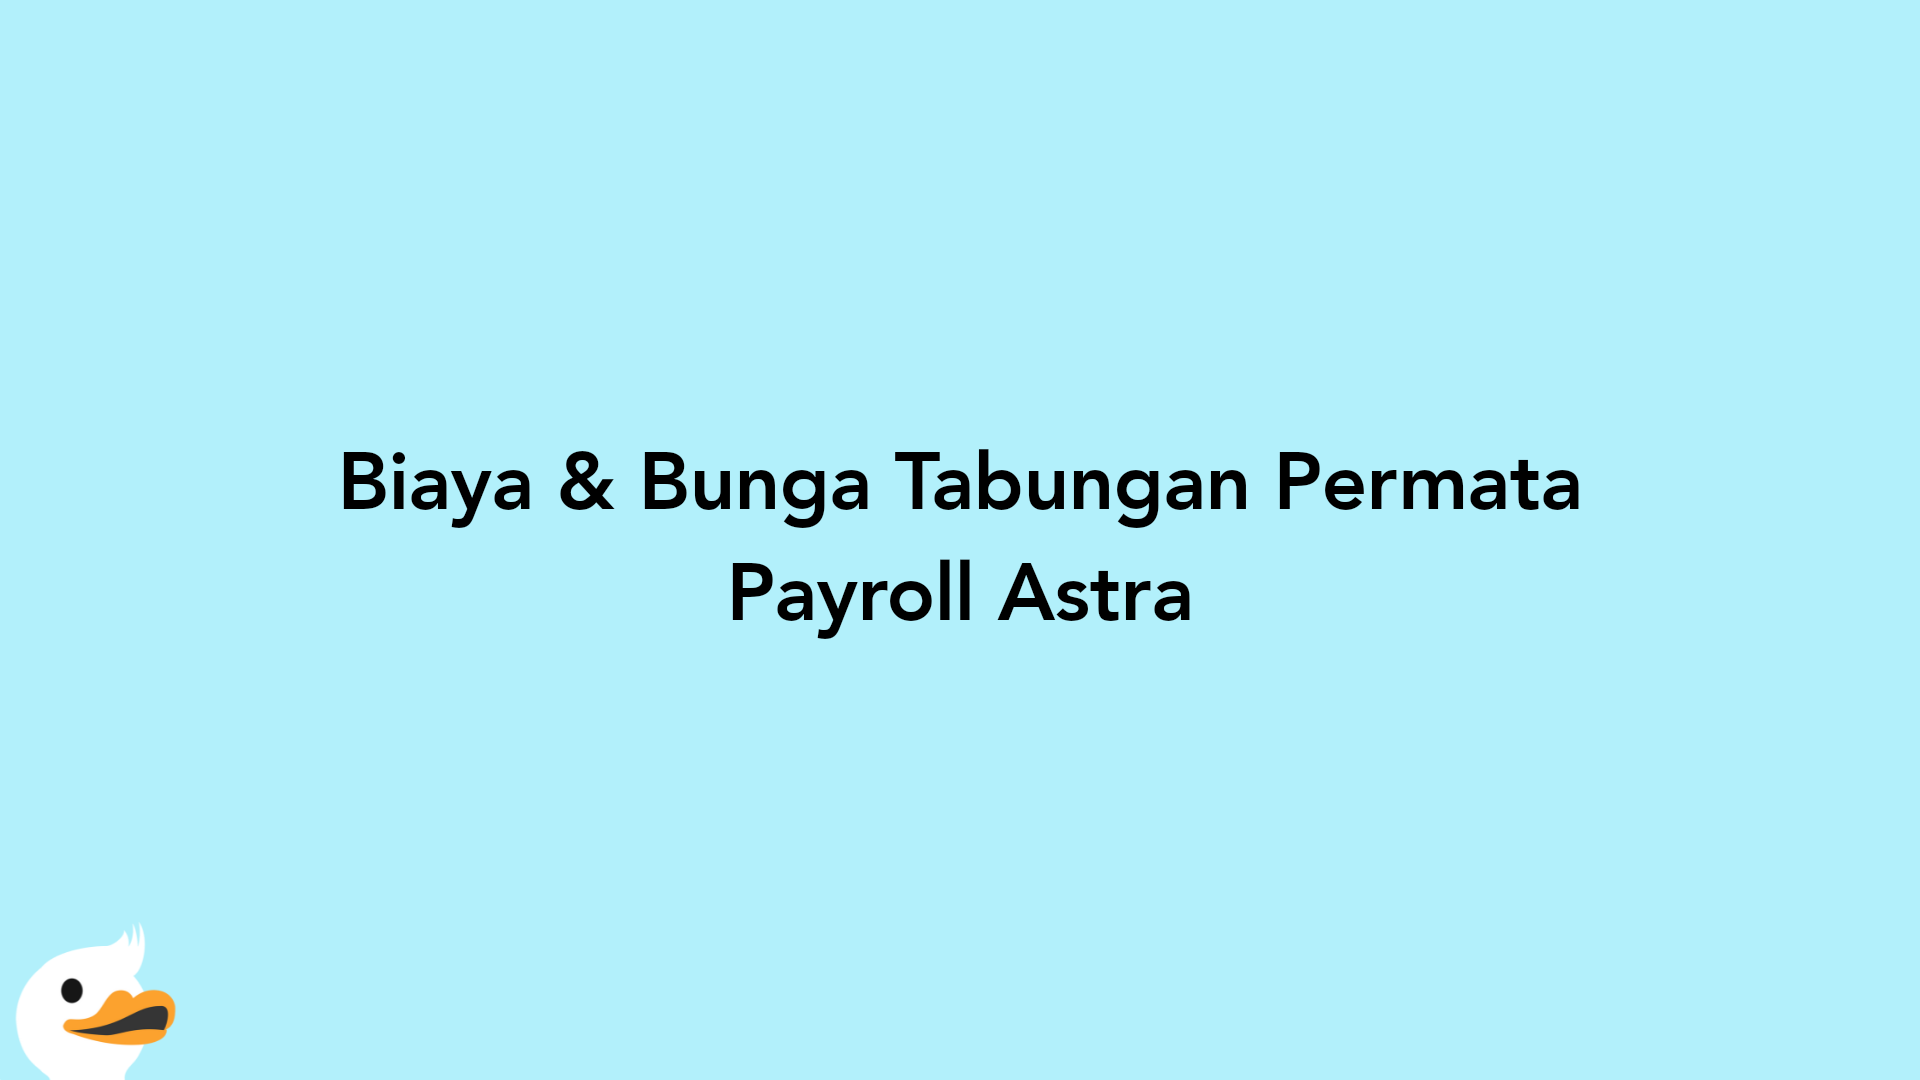 Biaya & Bunga Tabungan Permata Payroll Astra